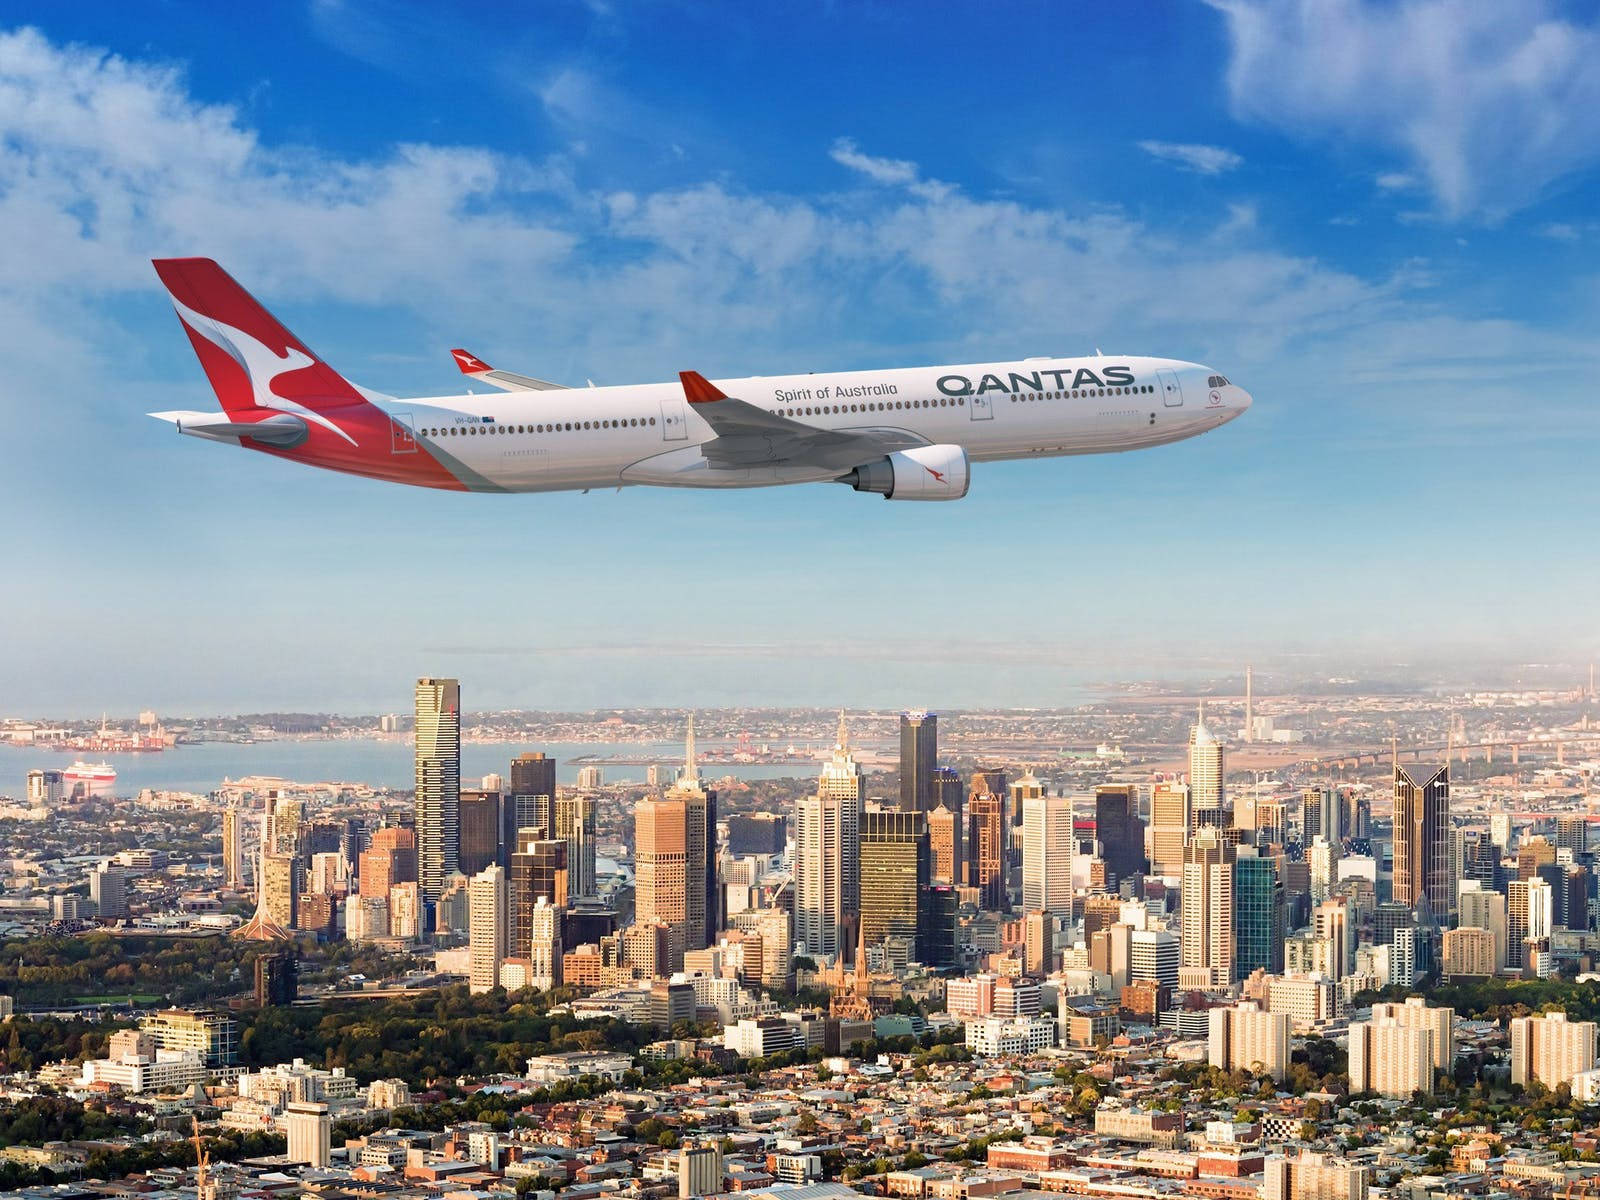 Aviónde Pasajeros De Qantas Sobre La Ciudad. Fondo de pantalla